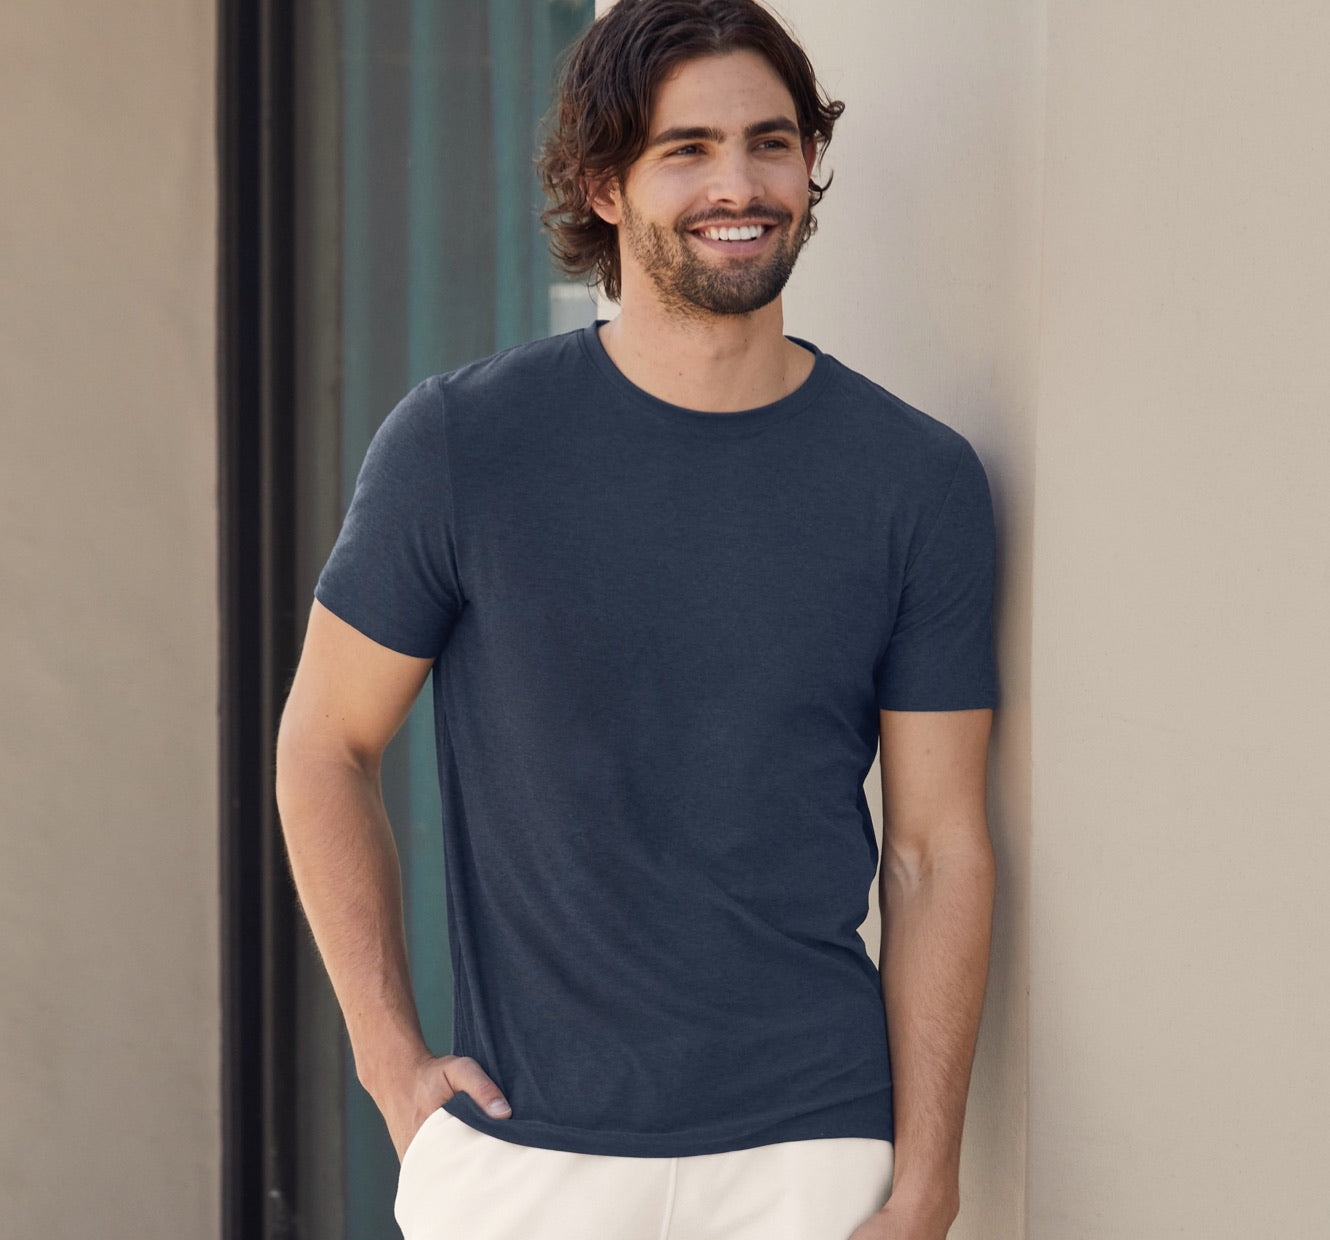 Buy Gaiam Men's Everyday Basic V Neck T Shirt - Short Sleeve Yoga & Workout  Top - Sleet Heather Everyday, Large at